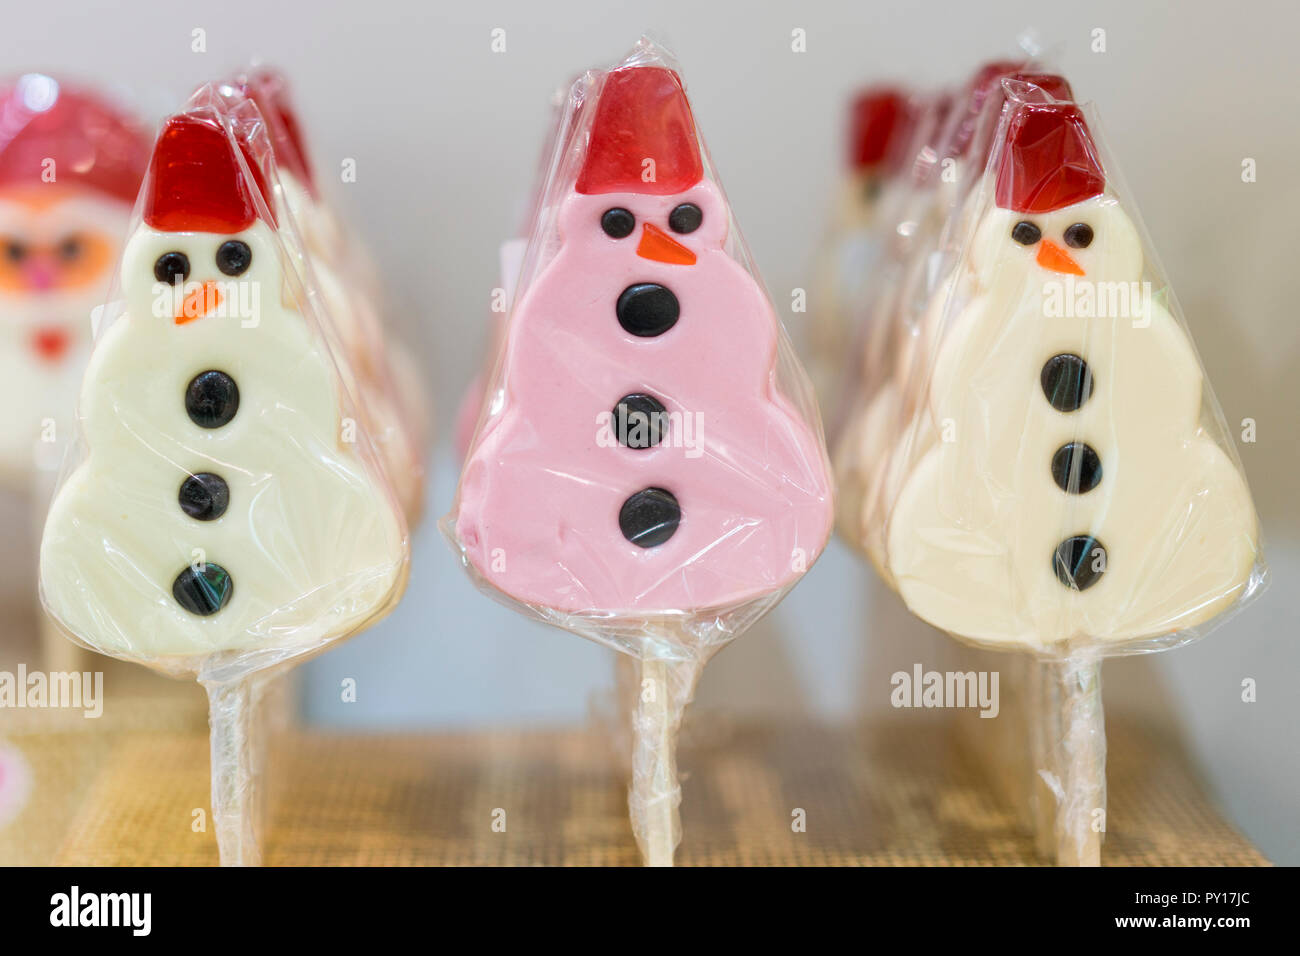 Le Snowman lollipops. Le Snowman cake pops. Le Snowman faite de bonbons de sucre. Joyeux Noël et Bonne Année carte de vœux. Sucettes de funny snowman Banque D'Images